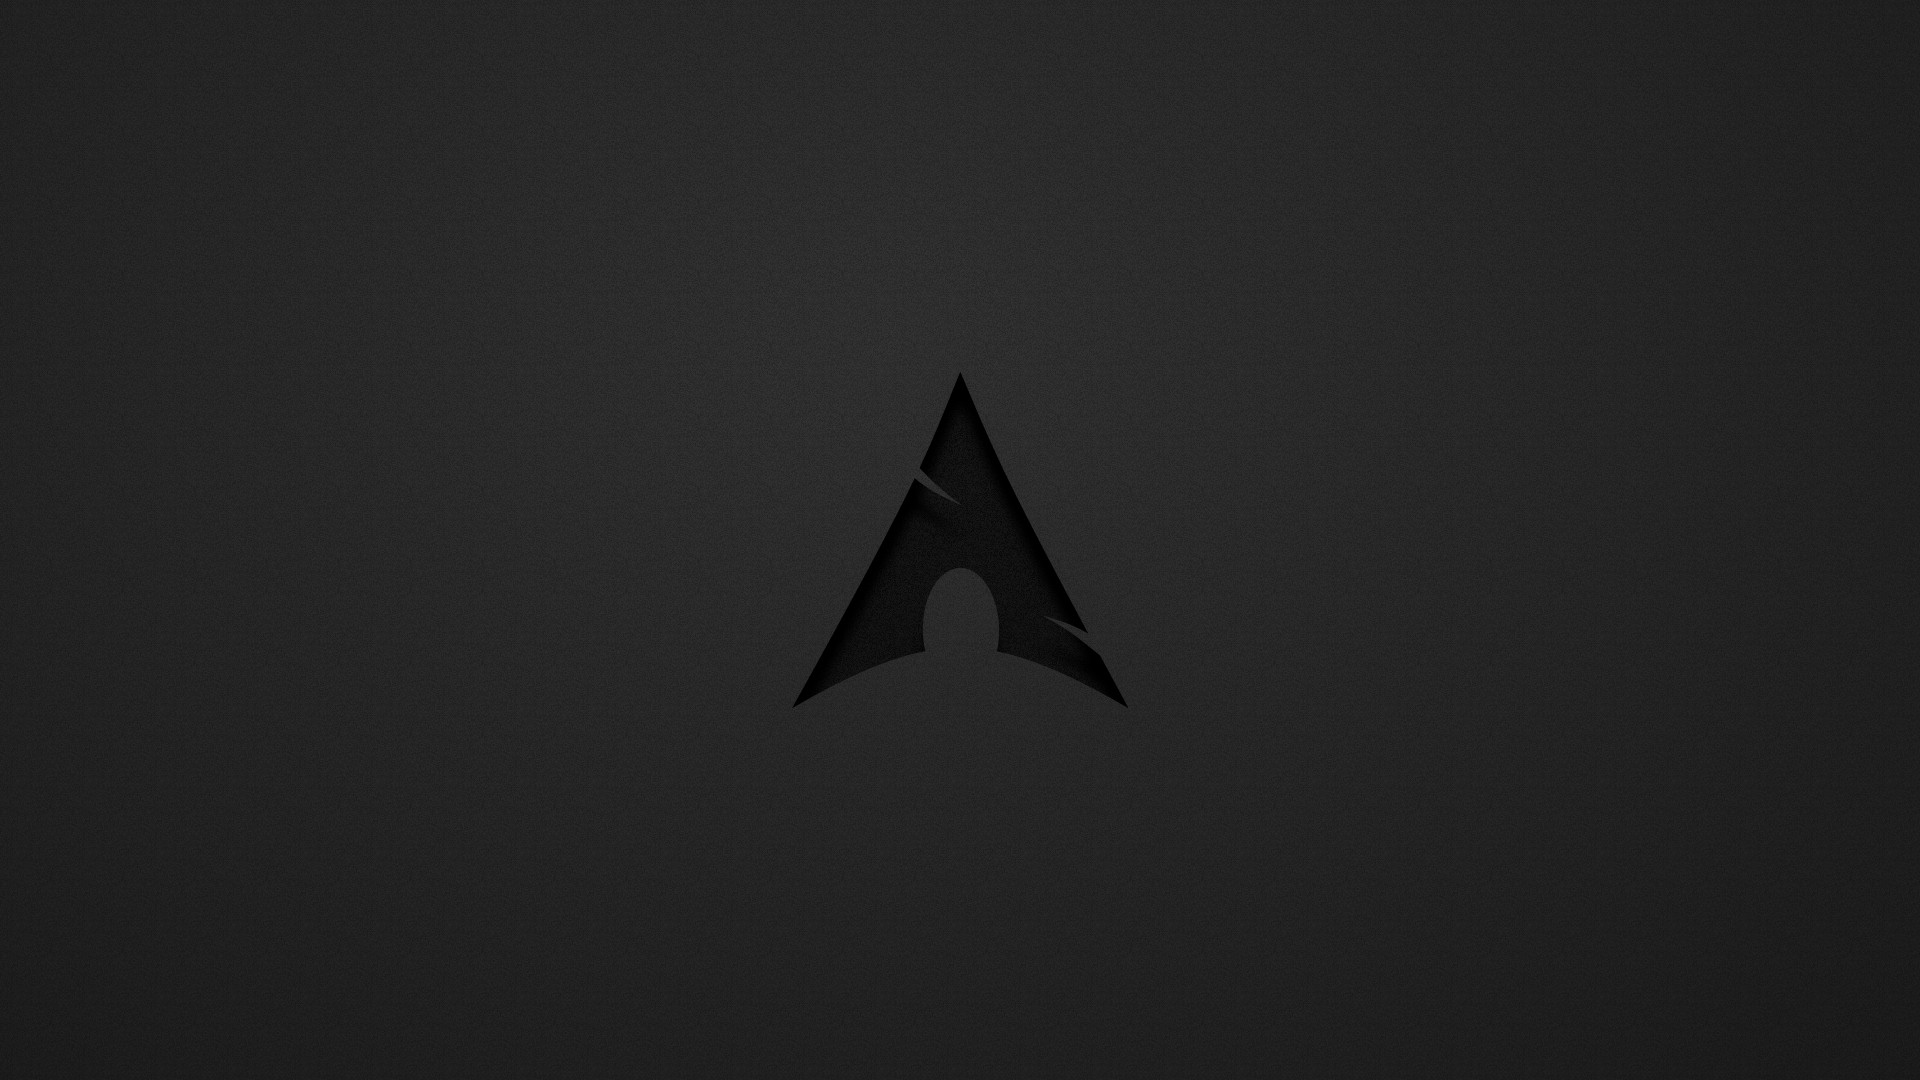 アーチlinux壁紙hd,黒,三角形,闇,空,黒と白